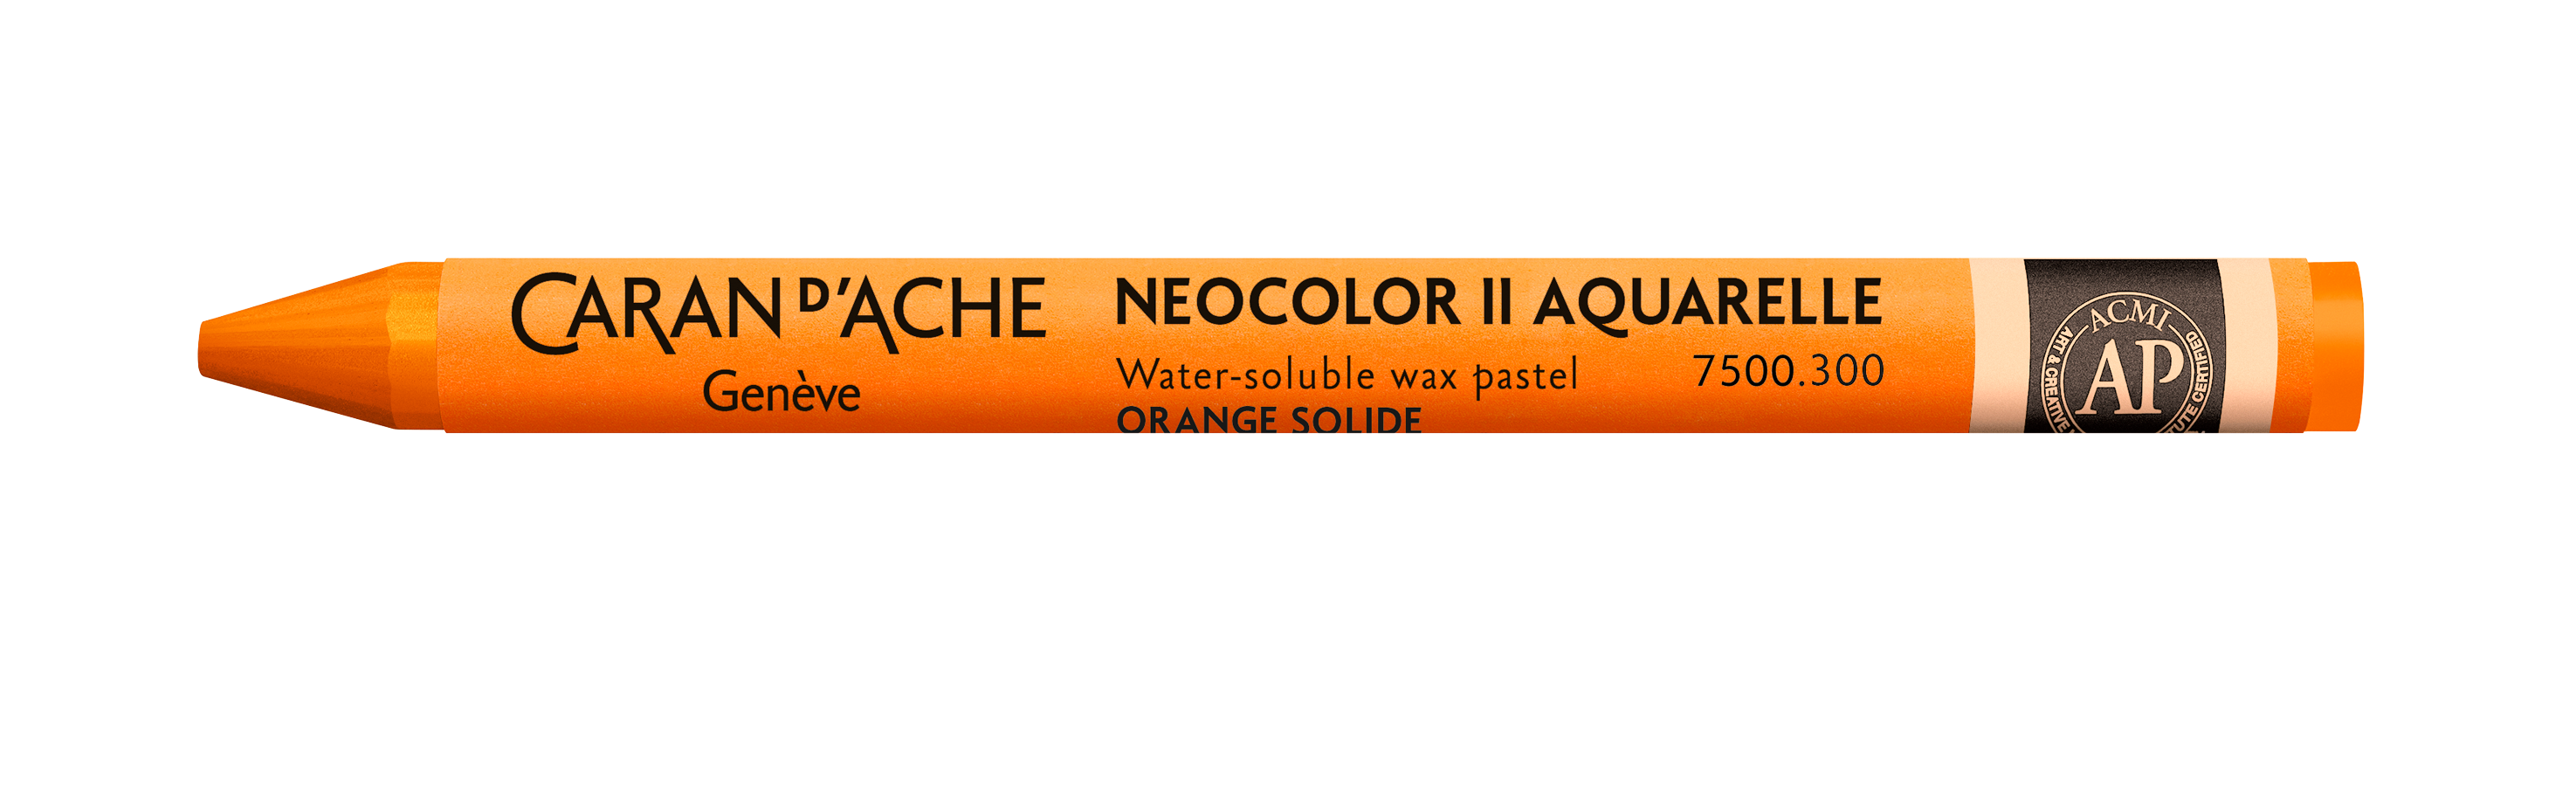 Caran d'Ache Neocolor II - wateroplosbare wax pastels - 300 Light Fast Orange